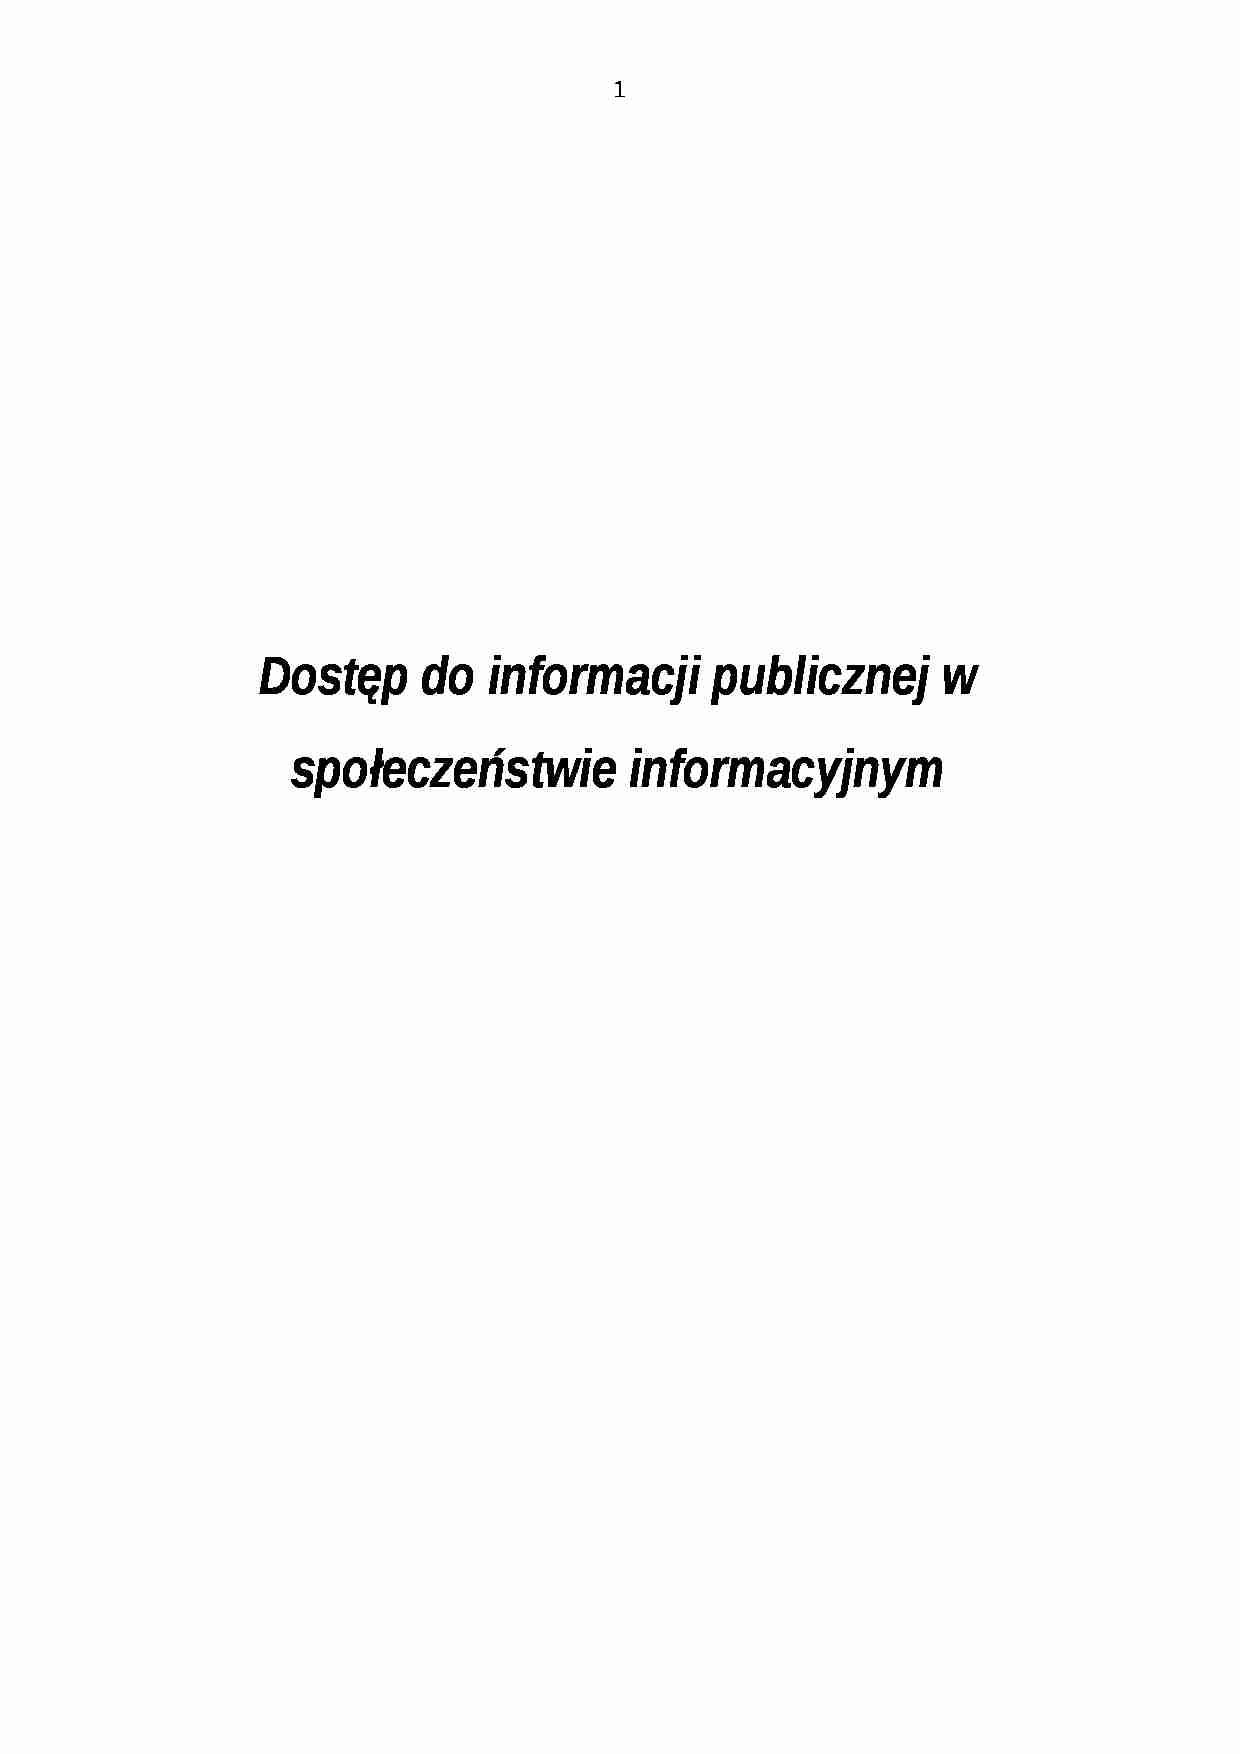 Dostęp do informacji publicznej w społeczeństwie informacyjnym-opracowanie - Społeczeństwo - strona 1